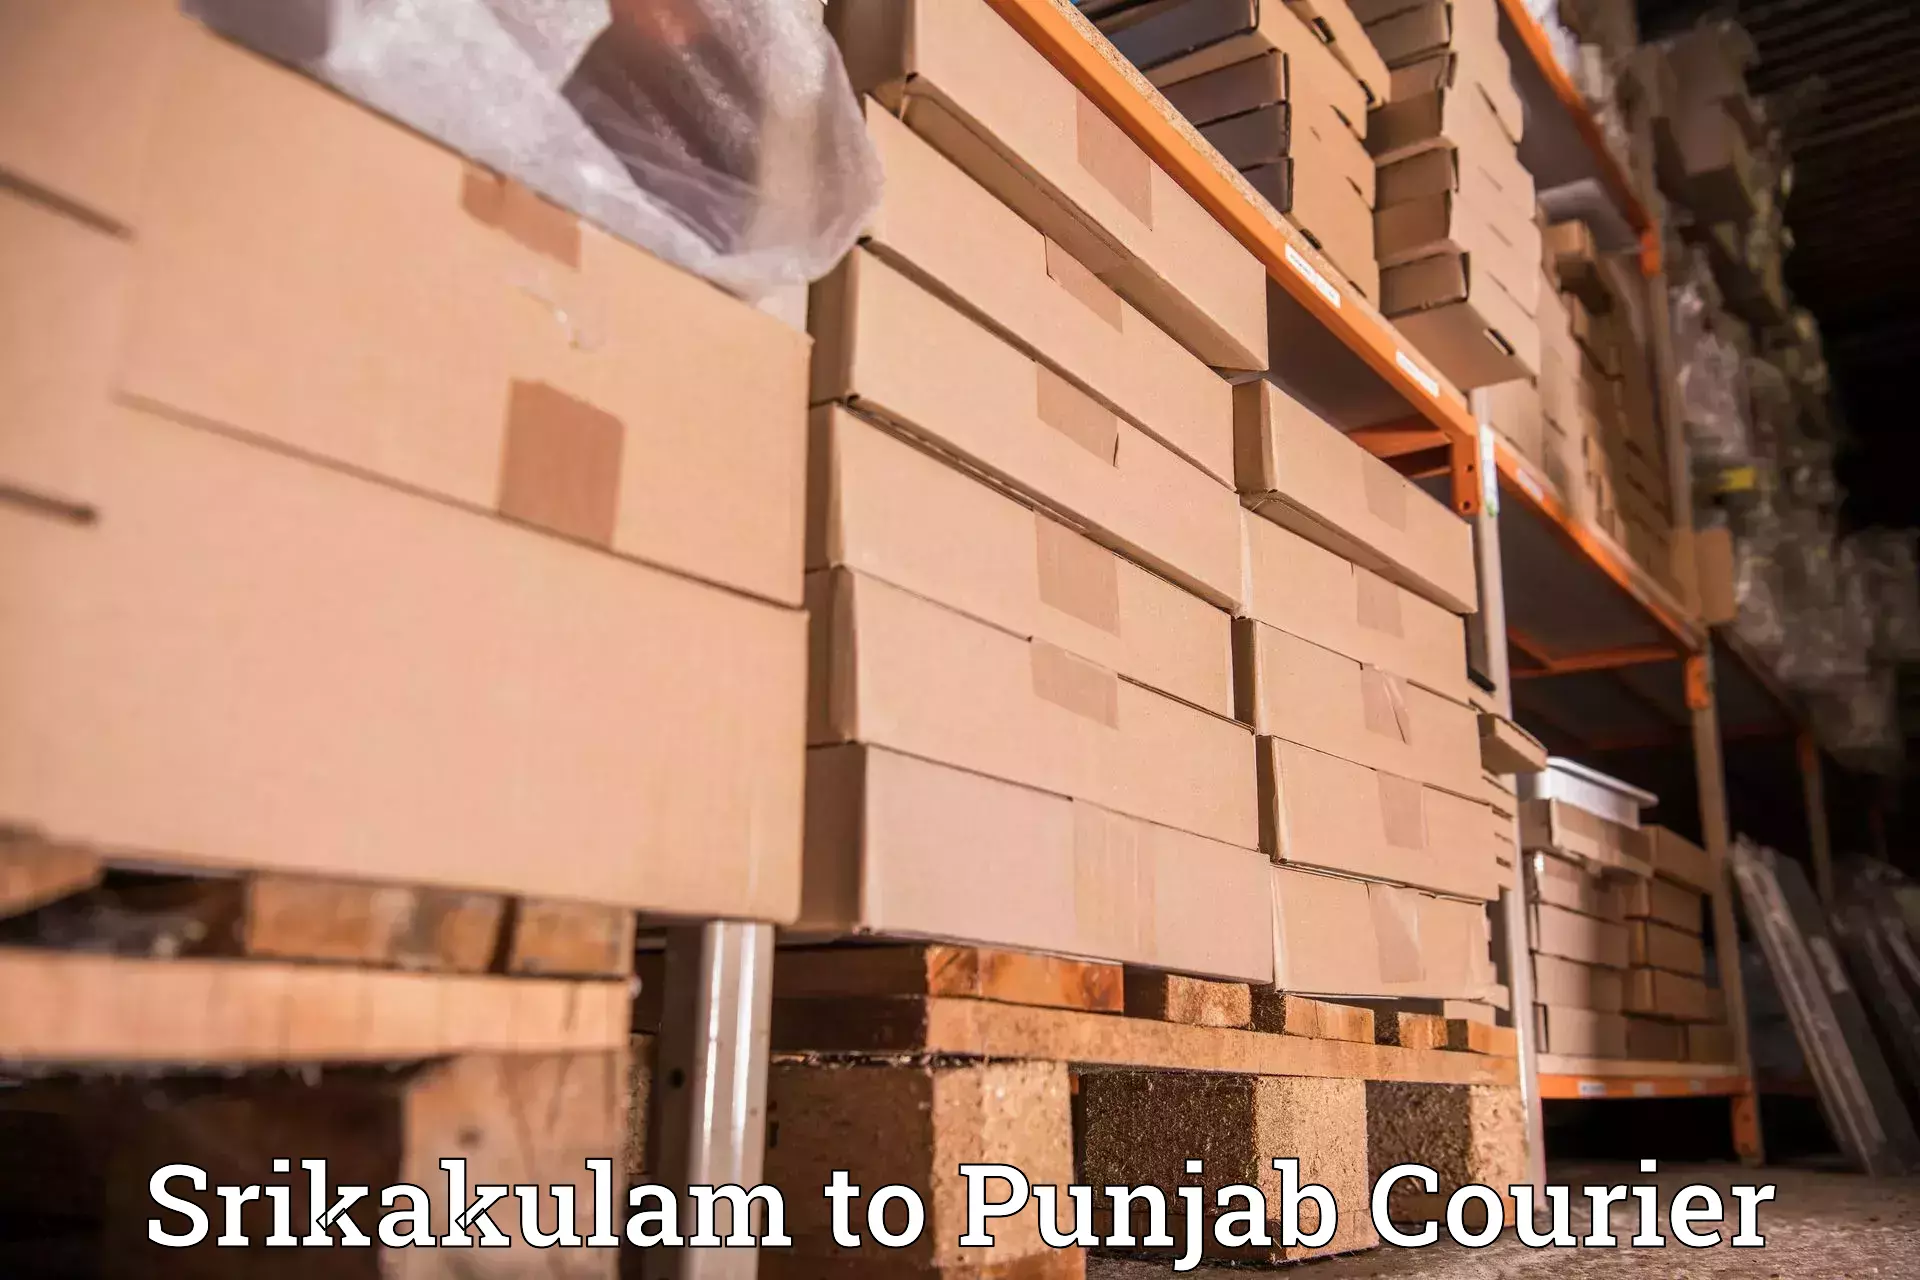 Personalized courier experiences Srikakulam to Central University of Punjab Bathinda